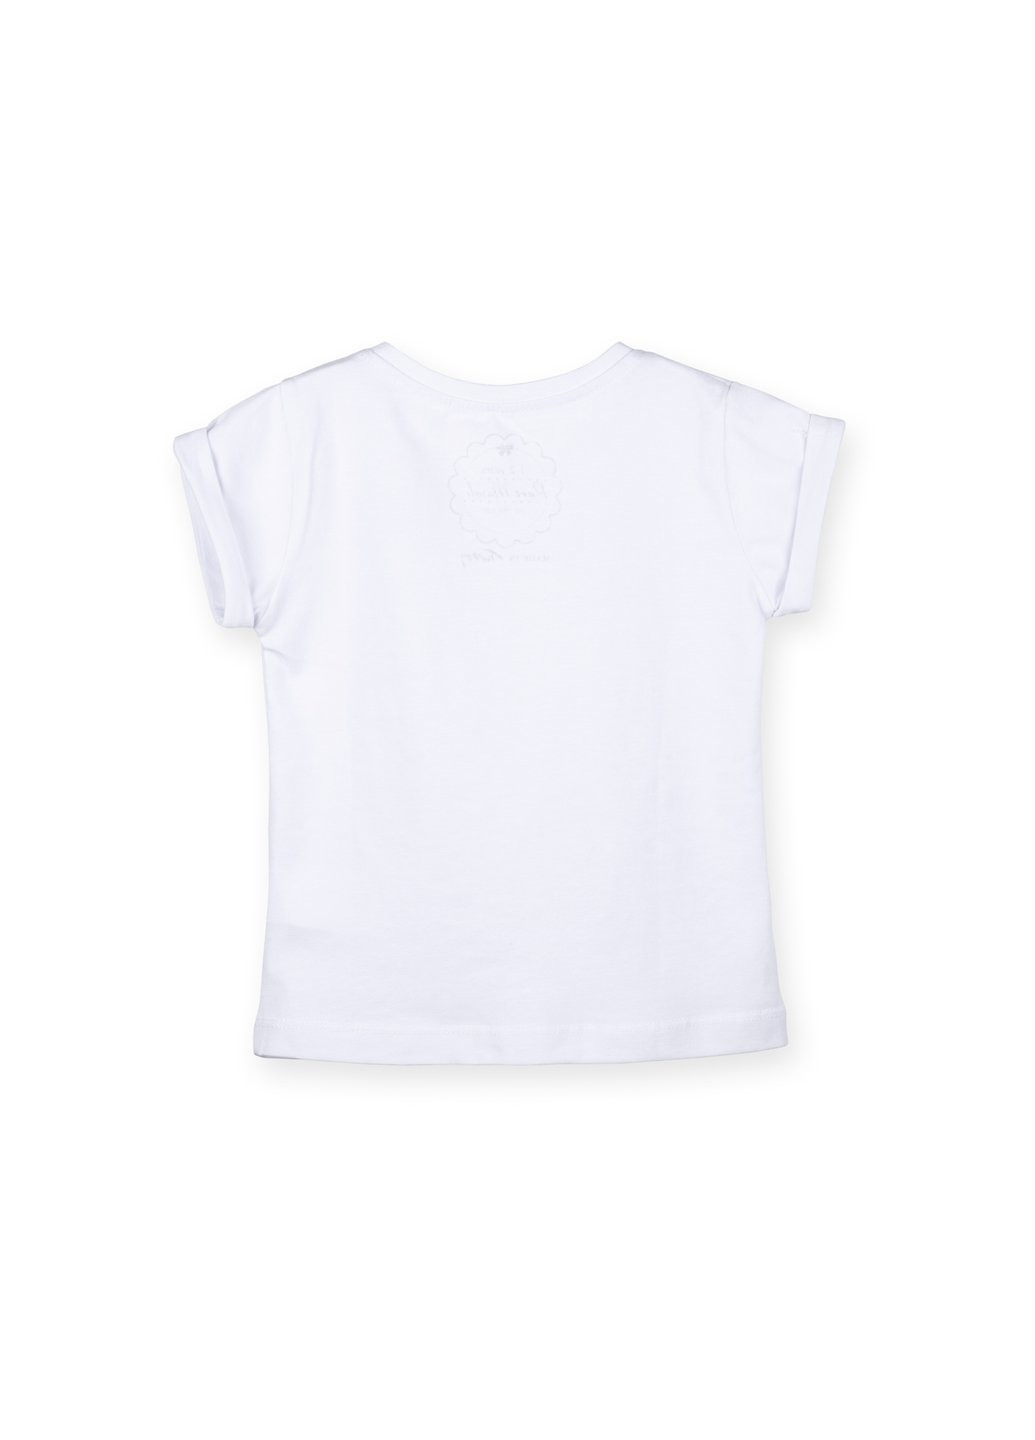 Комбинированная футболка детская с цветочками и бусинками (5699-104g-white) Haknur